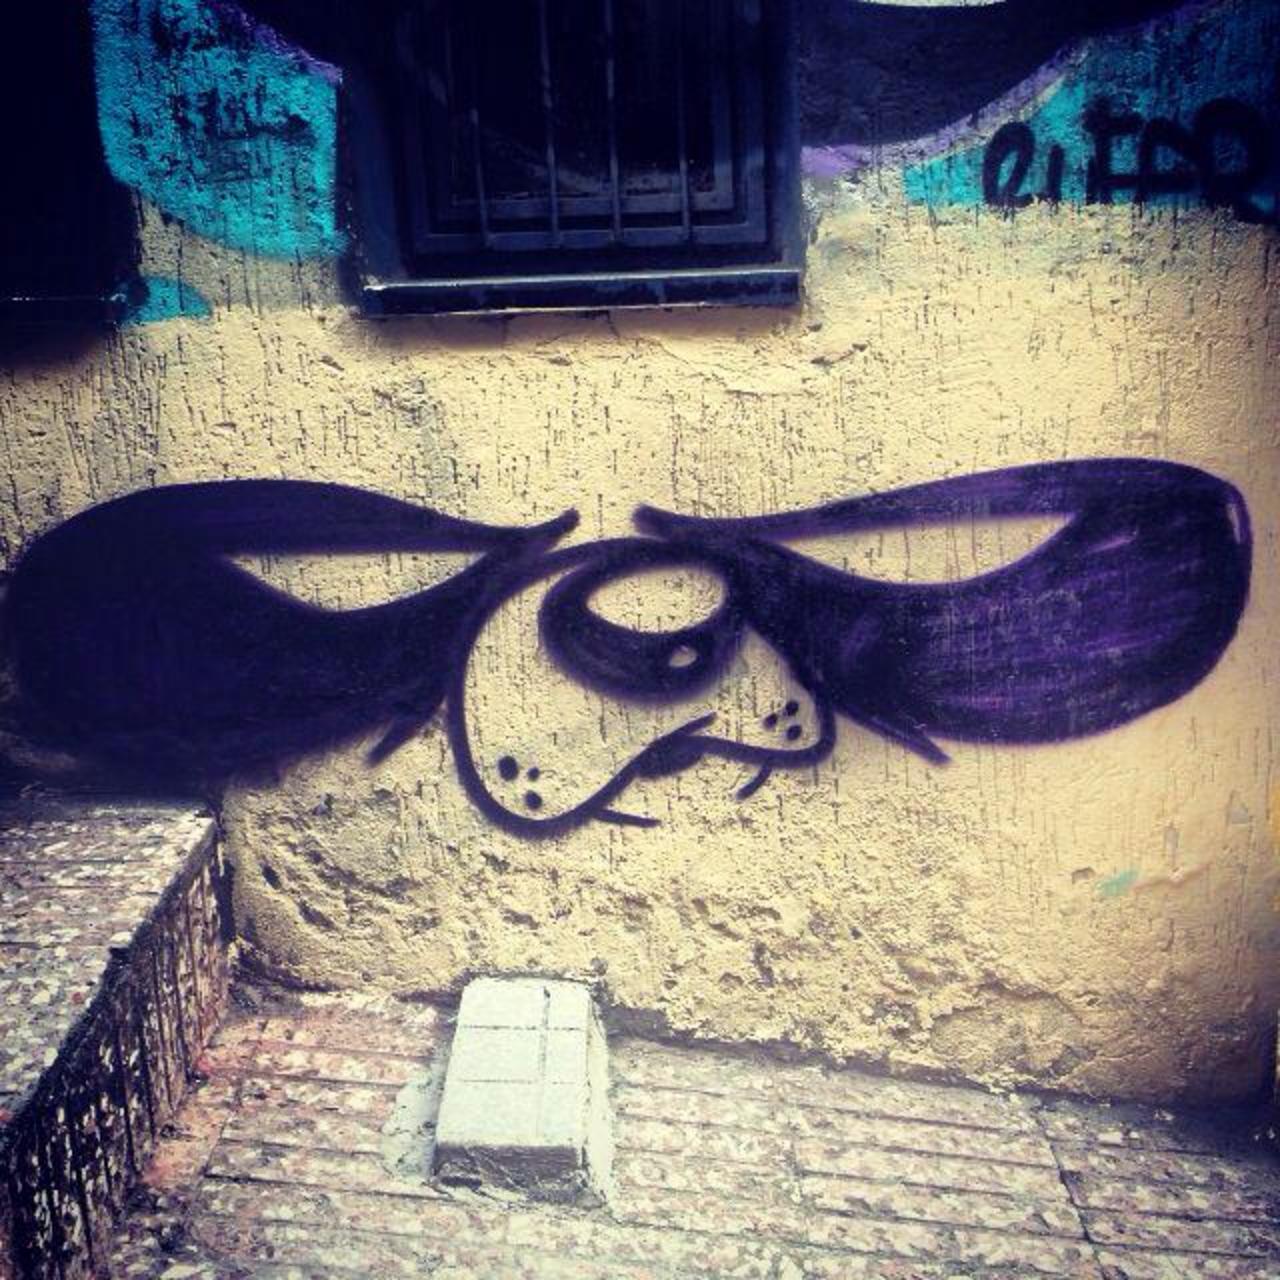 Panda'monium   • #streetart #graffiti #art #panda #funky #dope . : http://t.co/AHgCw4fr7W